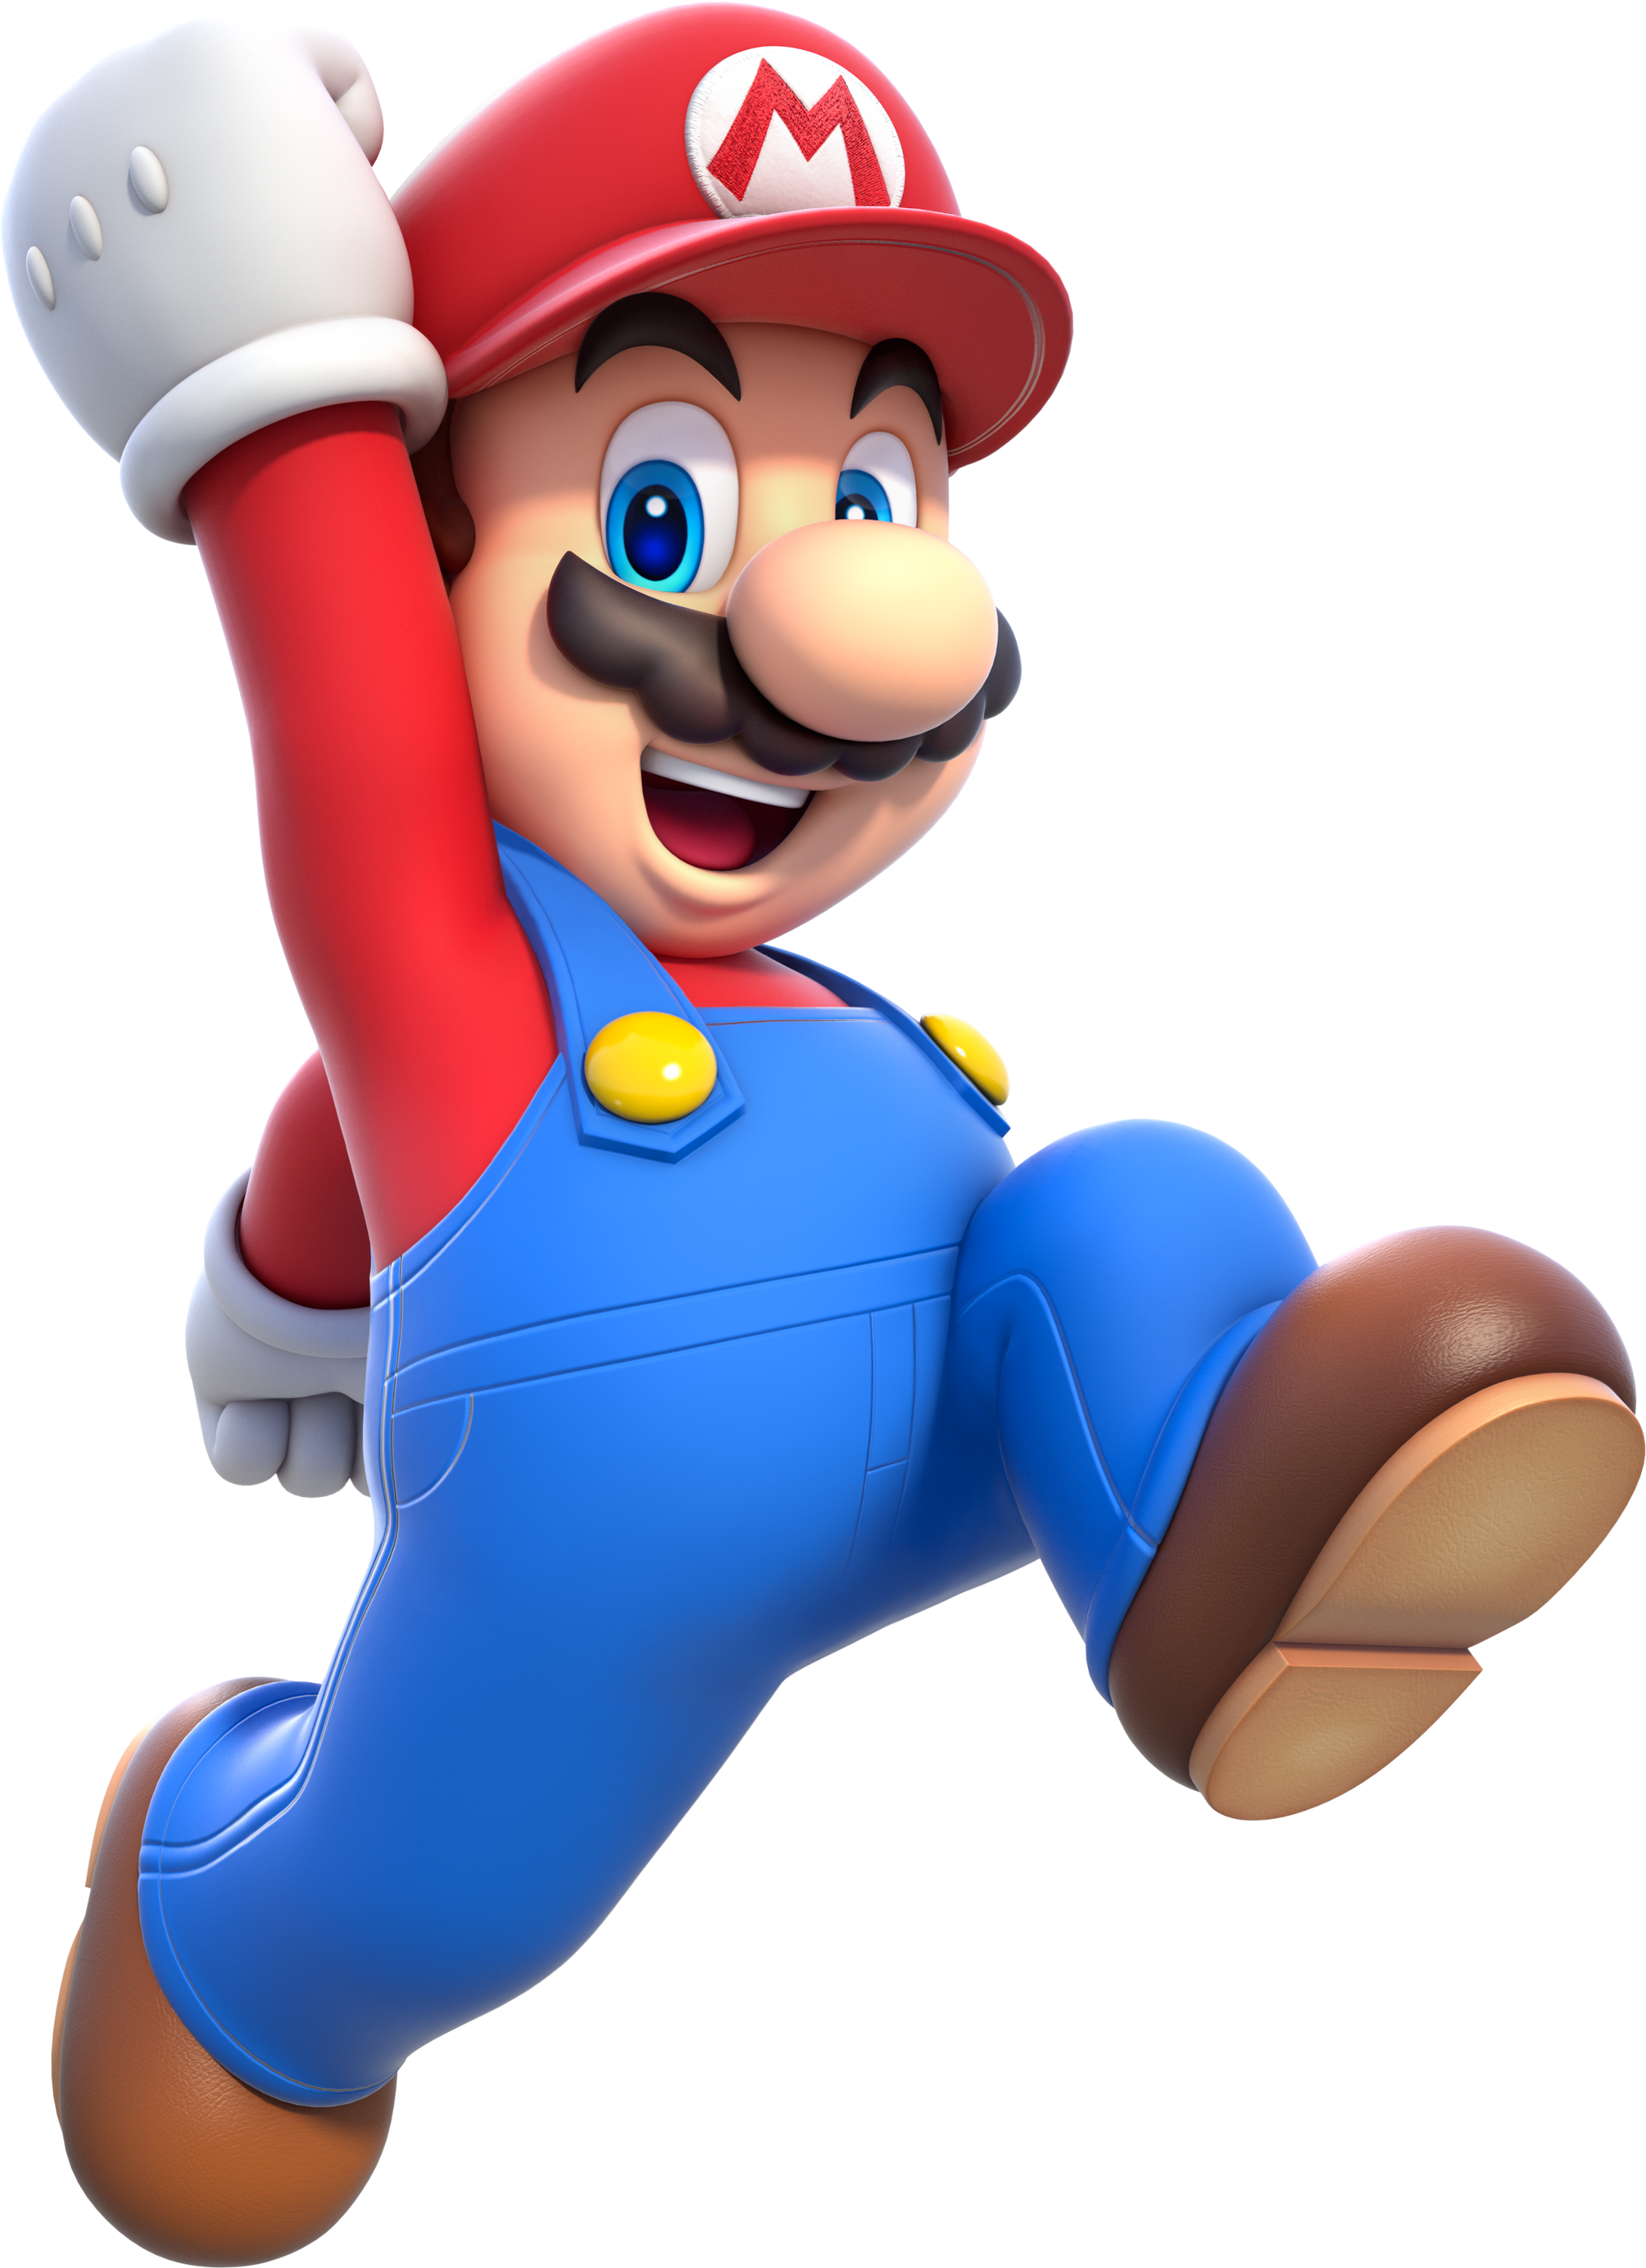 Super Mario - Super Mario, Transparent background PNG HD thumbnail